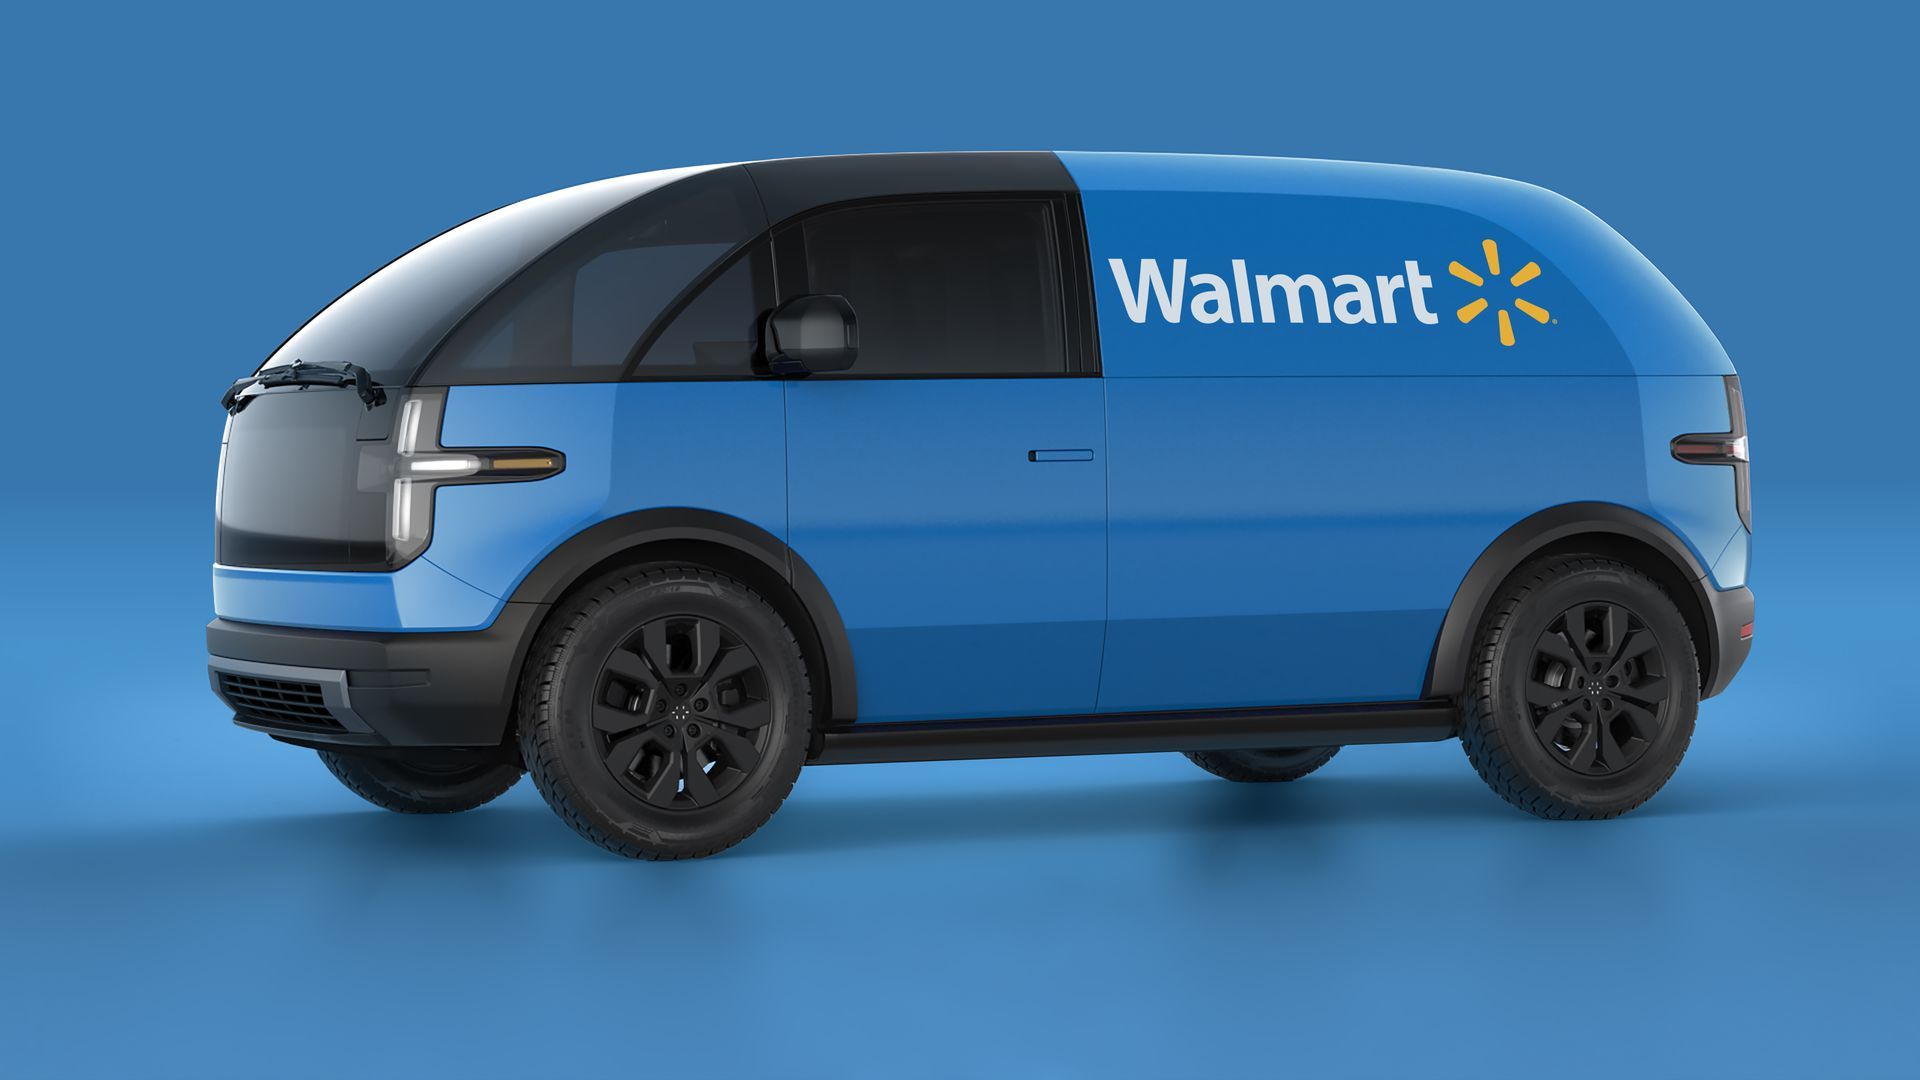 Walmart's new electric delivery van.